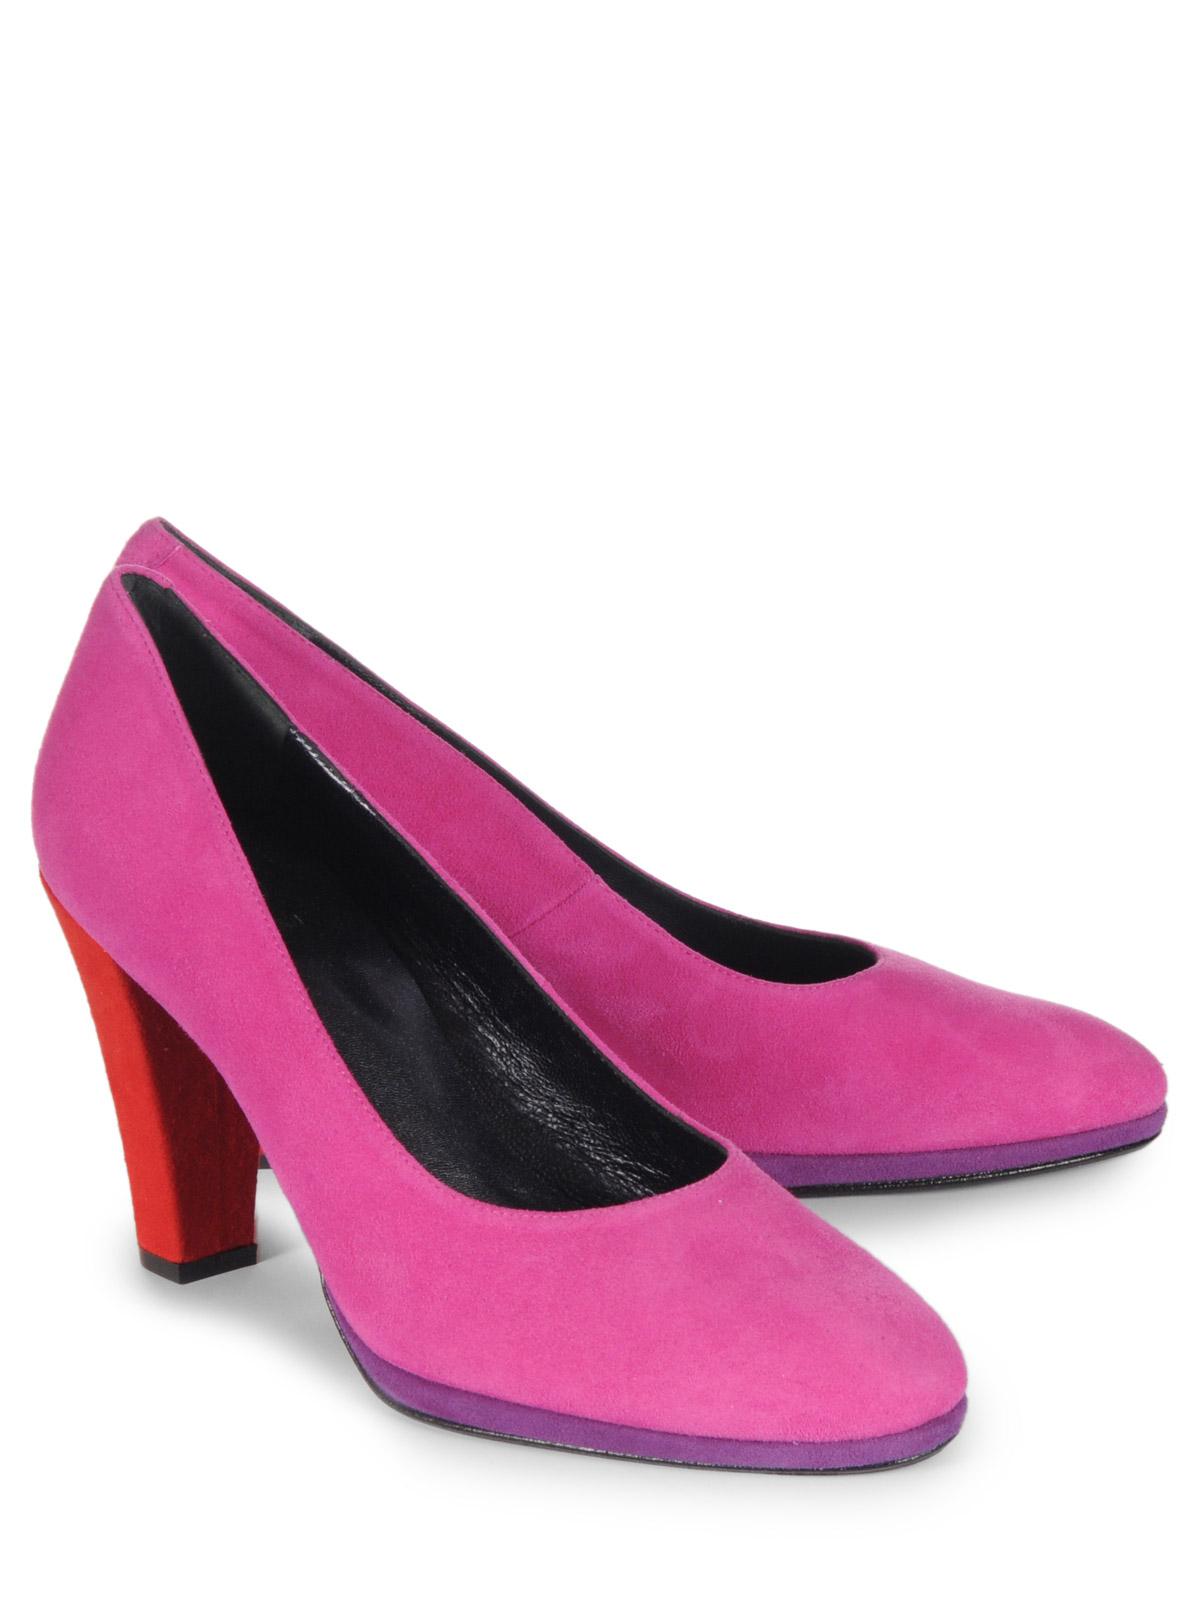 Foto Otto Kern Zapatos pumps rosa EU: 37 foto 800540